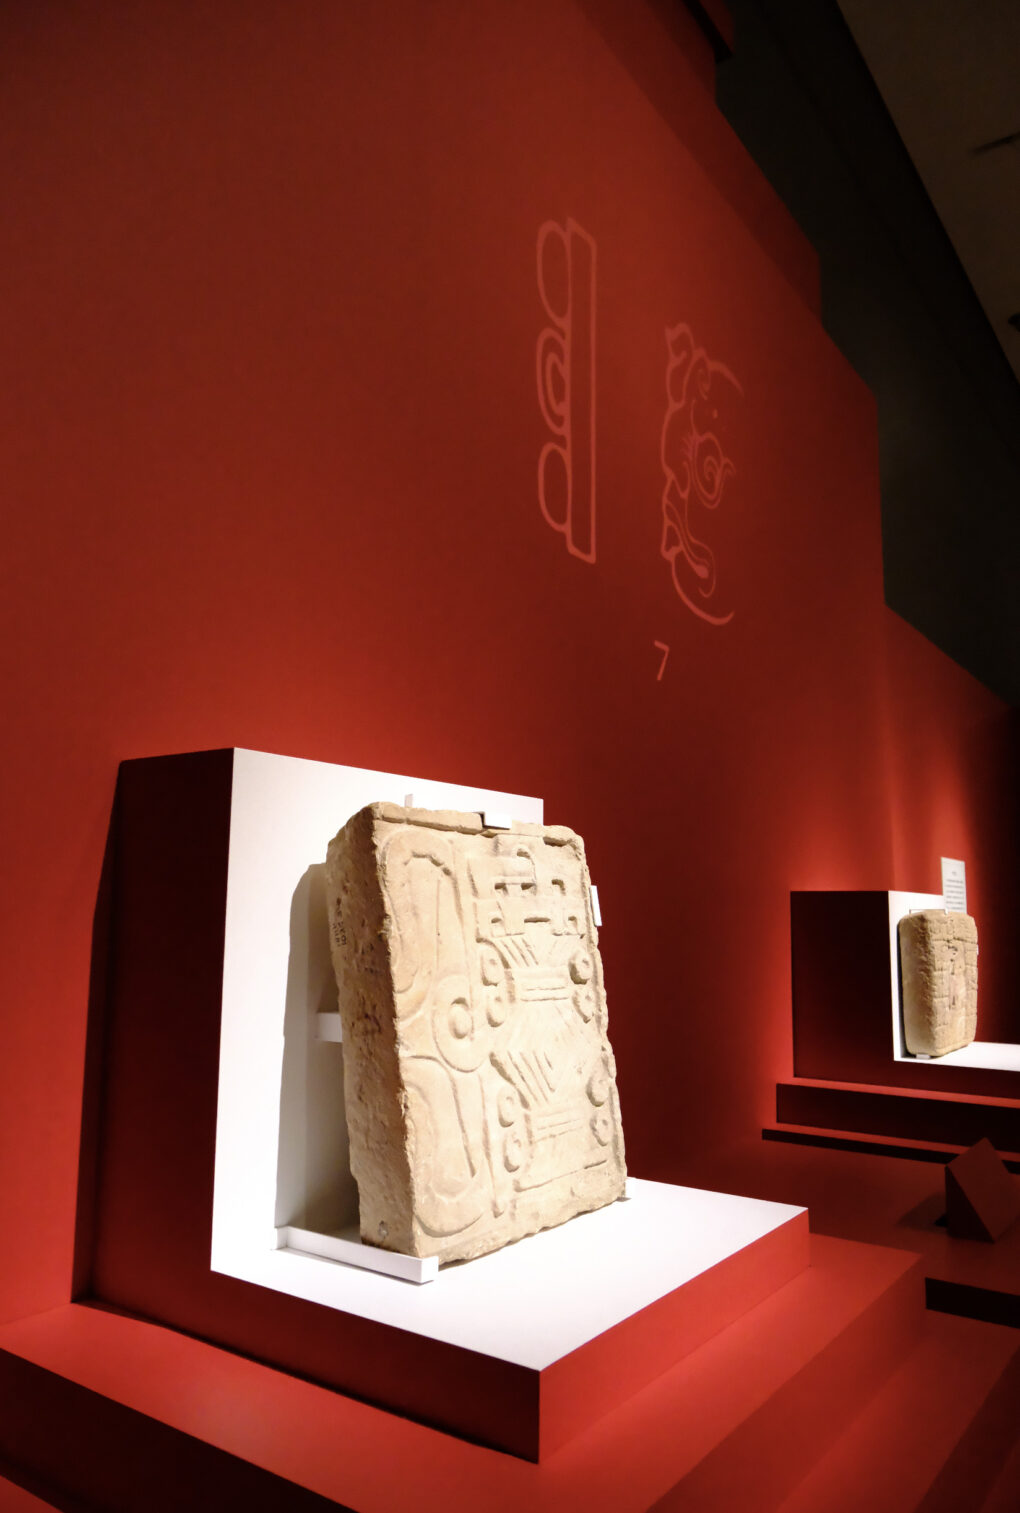 近世周期と太陽暦を表す石彫　マヤ文明　800〜1000年　チチェン・イツァ金星の基壇出土　ユカタン地方人類学博物館